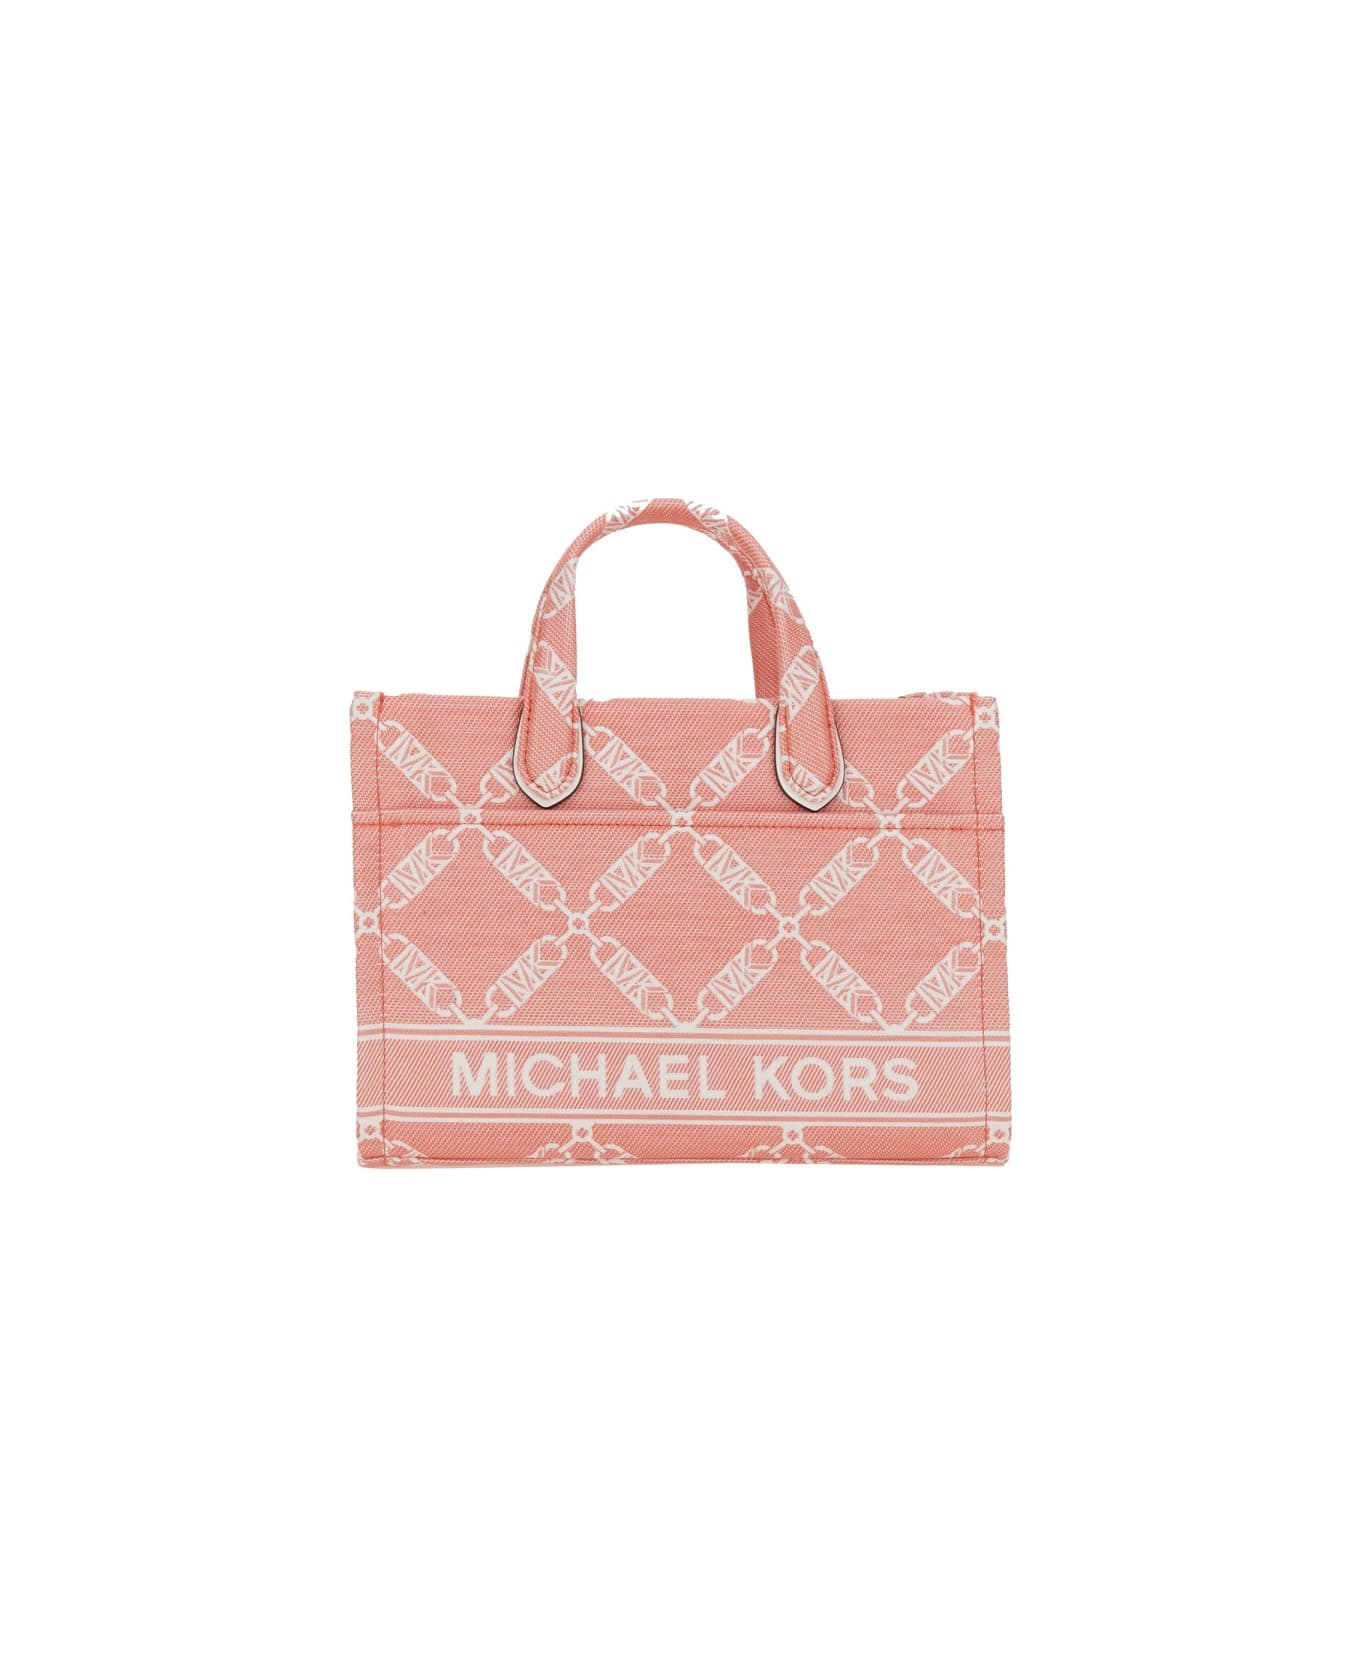 Michael Kors Gigi Small Tote Bag - PINK